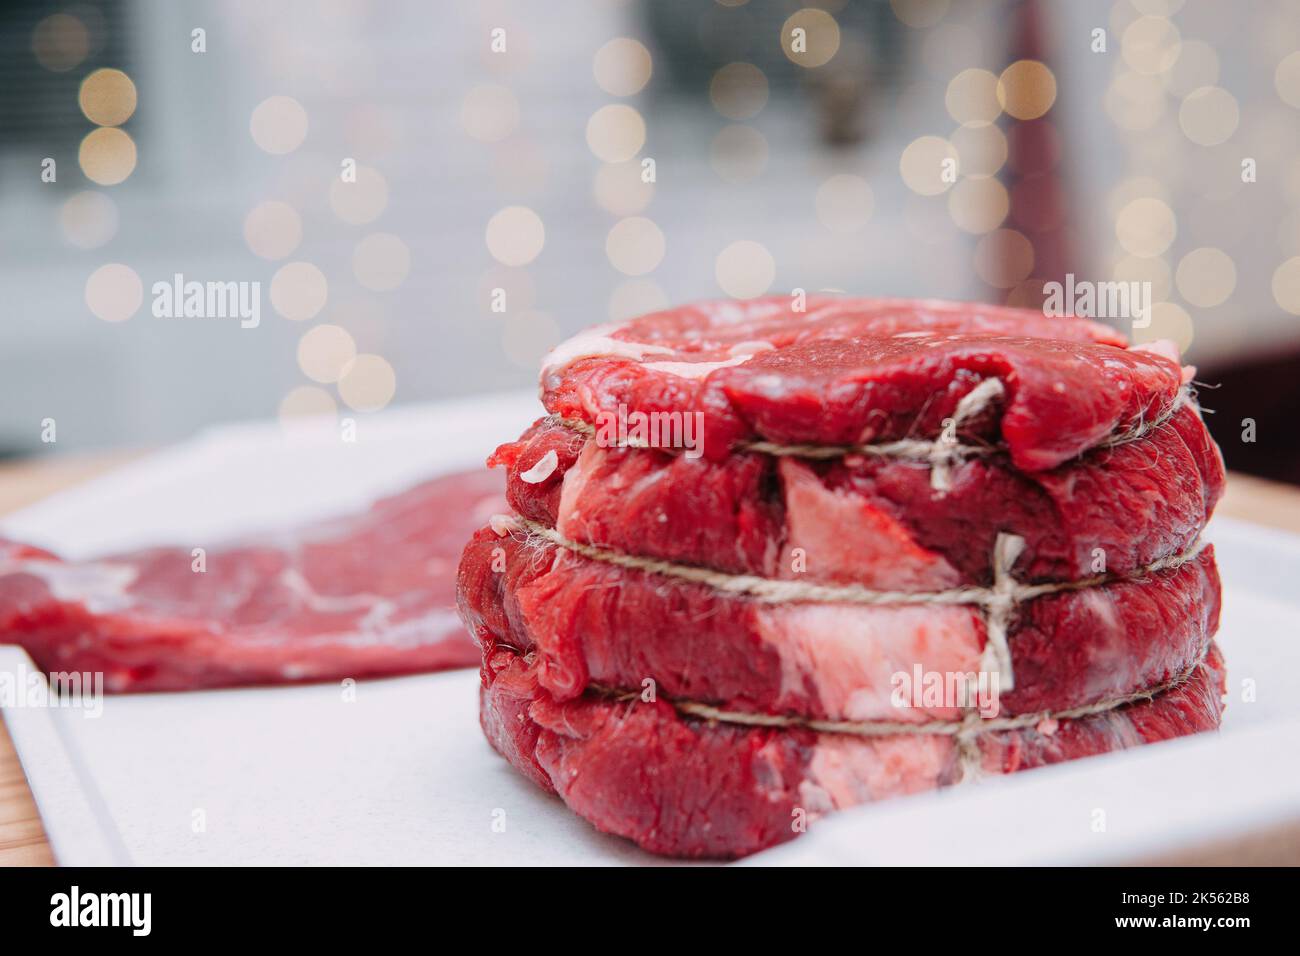 Un morceau de bœuf vieilli sur une assiette. Gros plan, mise au point sélective. Viande pour steaks en cours de cuisine. Banque D'Images